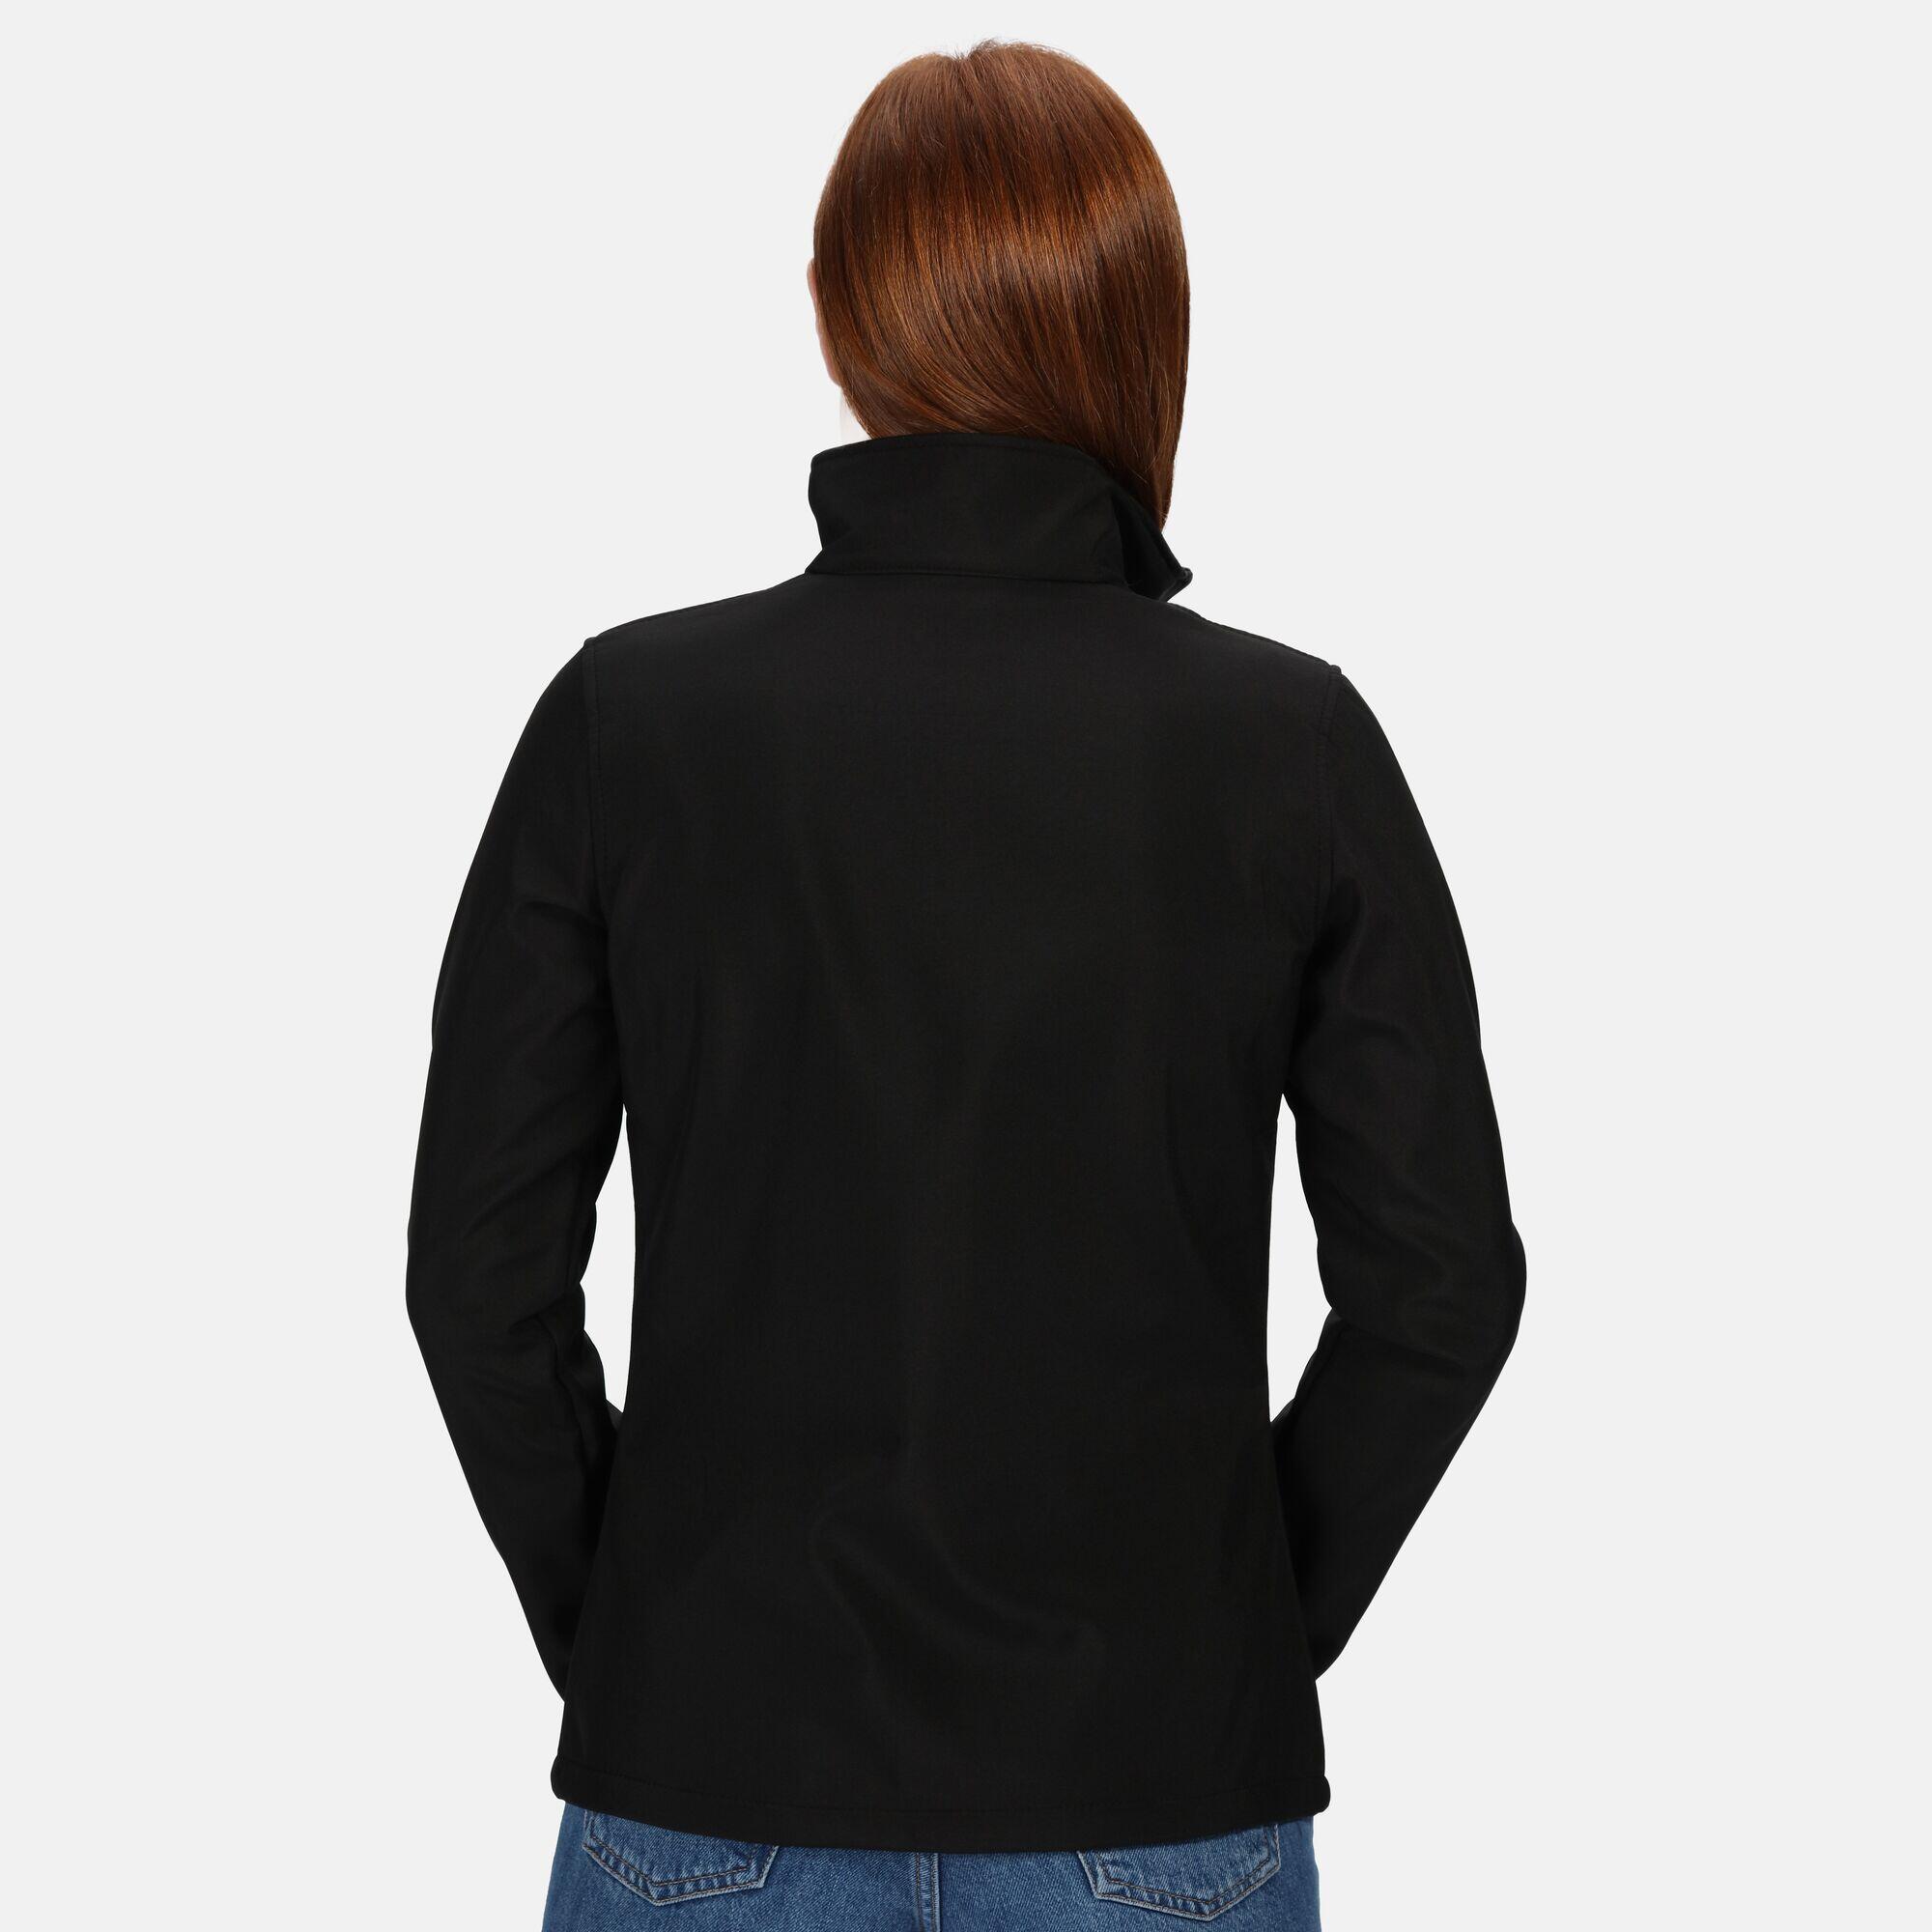 Womens/Ladies Ablaze Printable Softshell Jacket (Black/Black) REGATTA ...